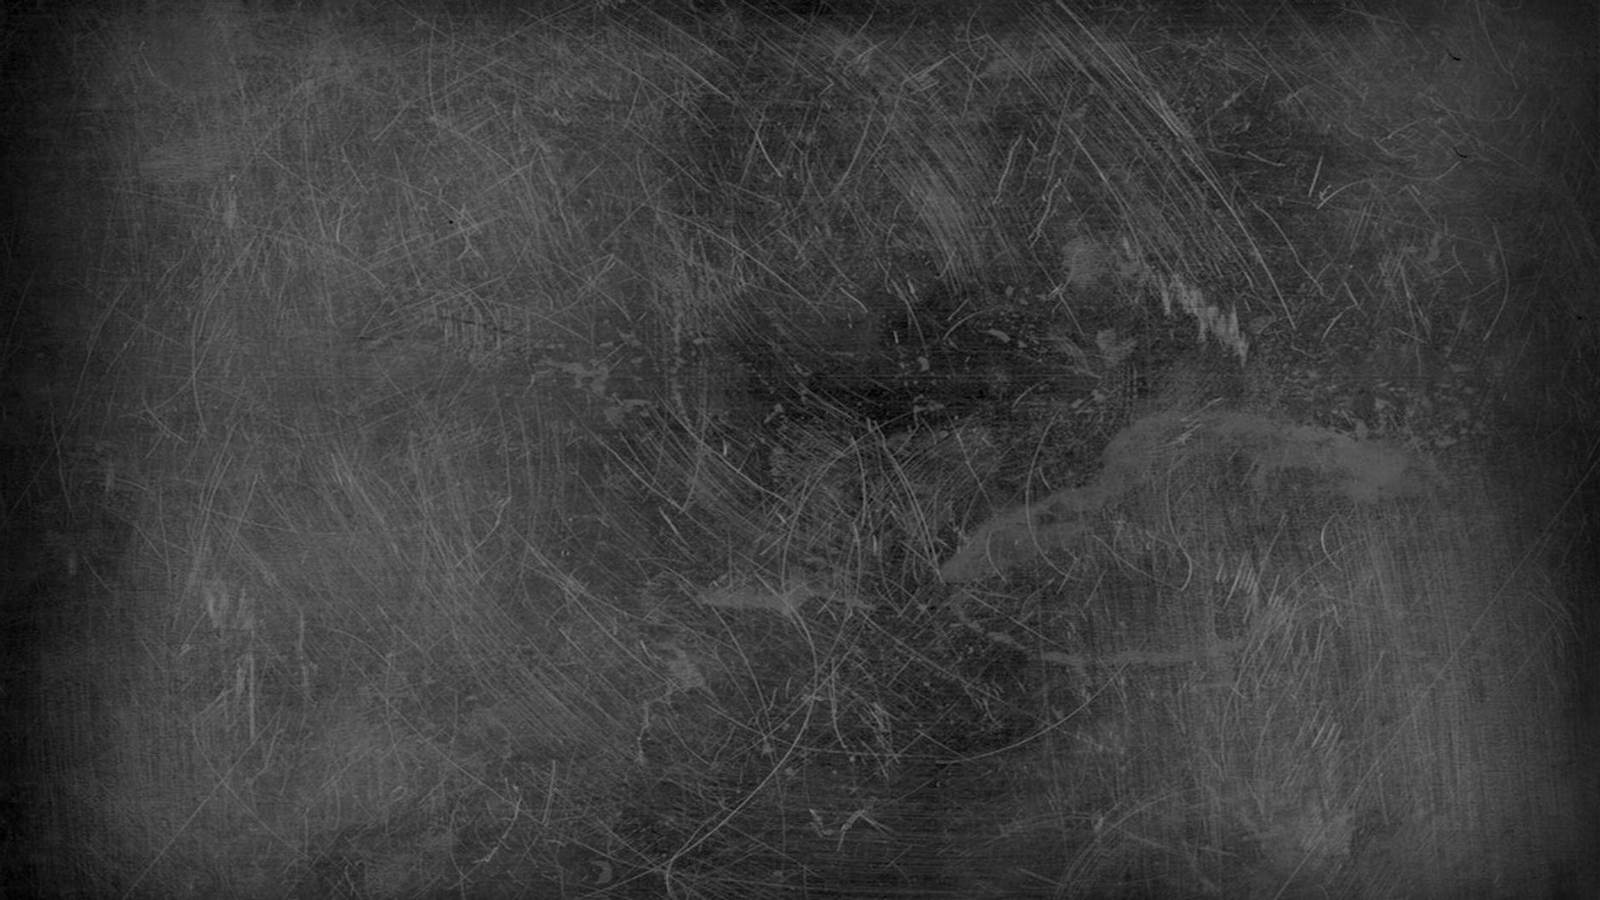 2 Blackboard HD Wallpapers | Backgrounds - Wallpaper Abyss